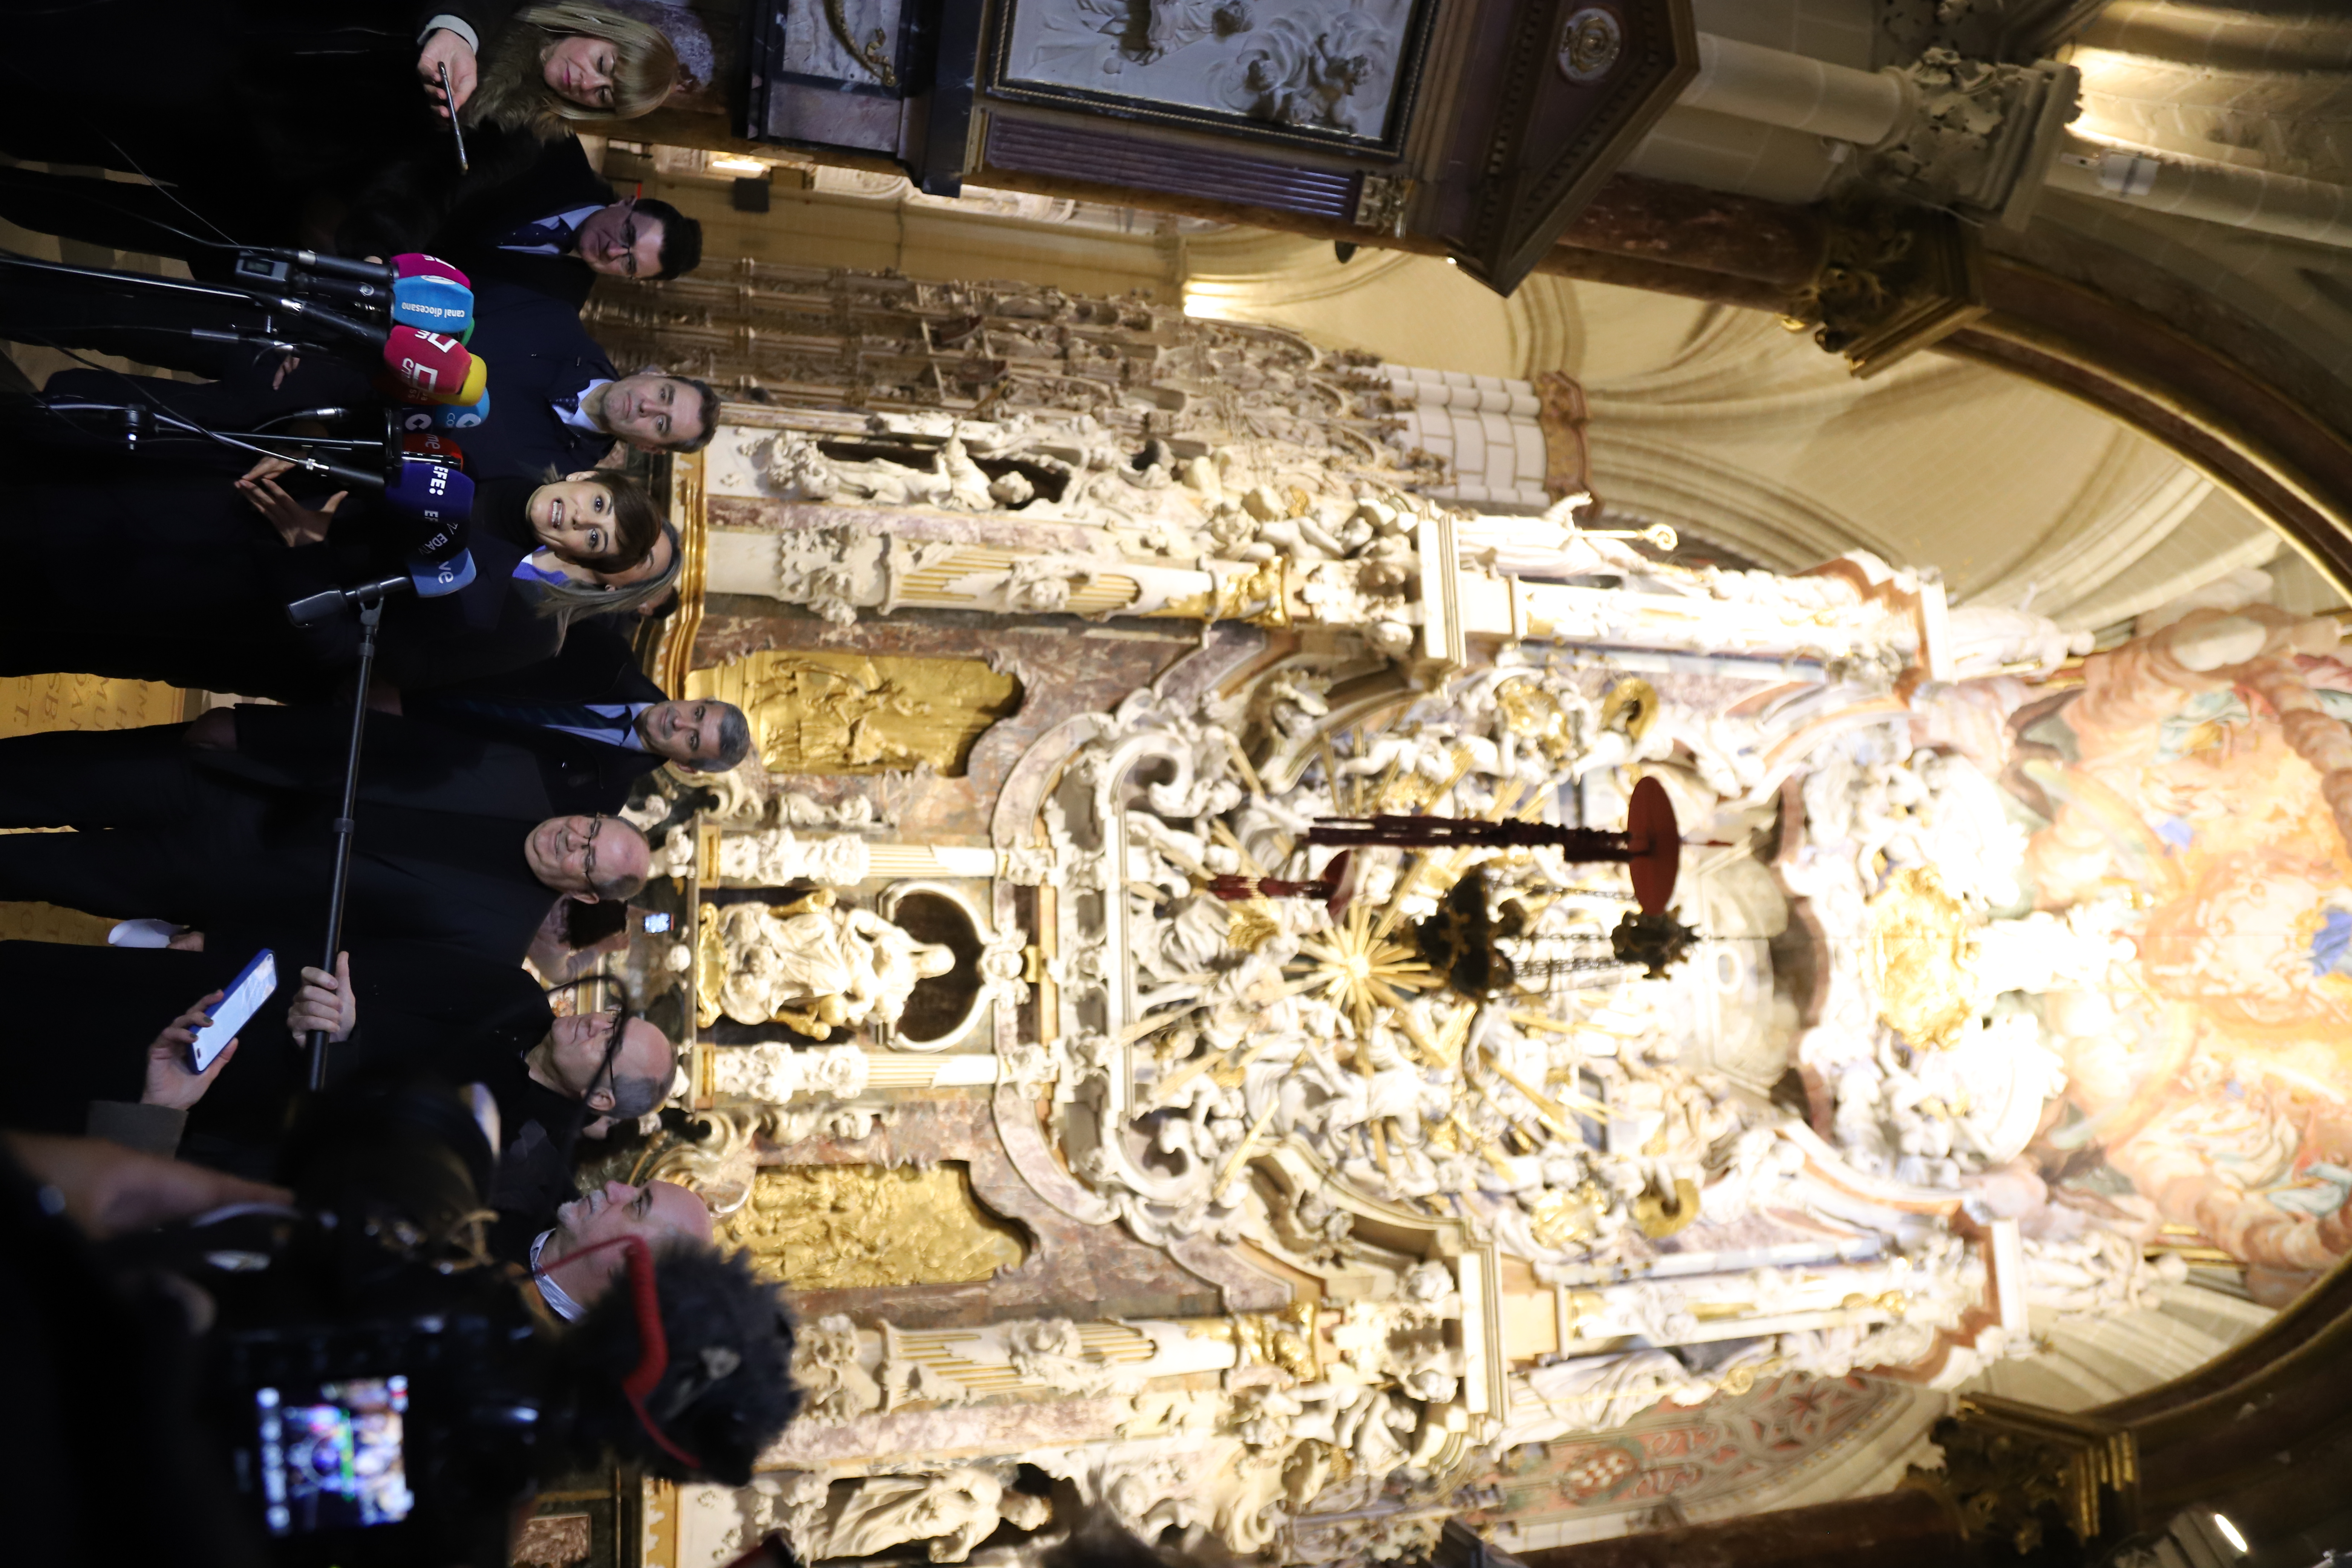 Visita al Ayuntamiento de Toledo, Diputación Provincial y Catedral Primada